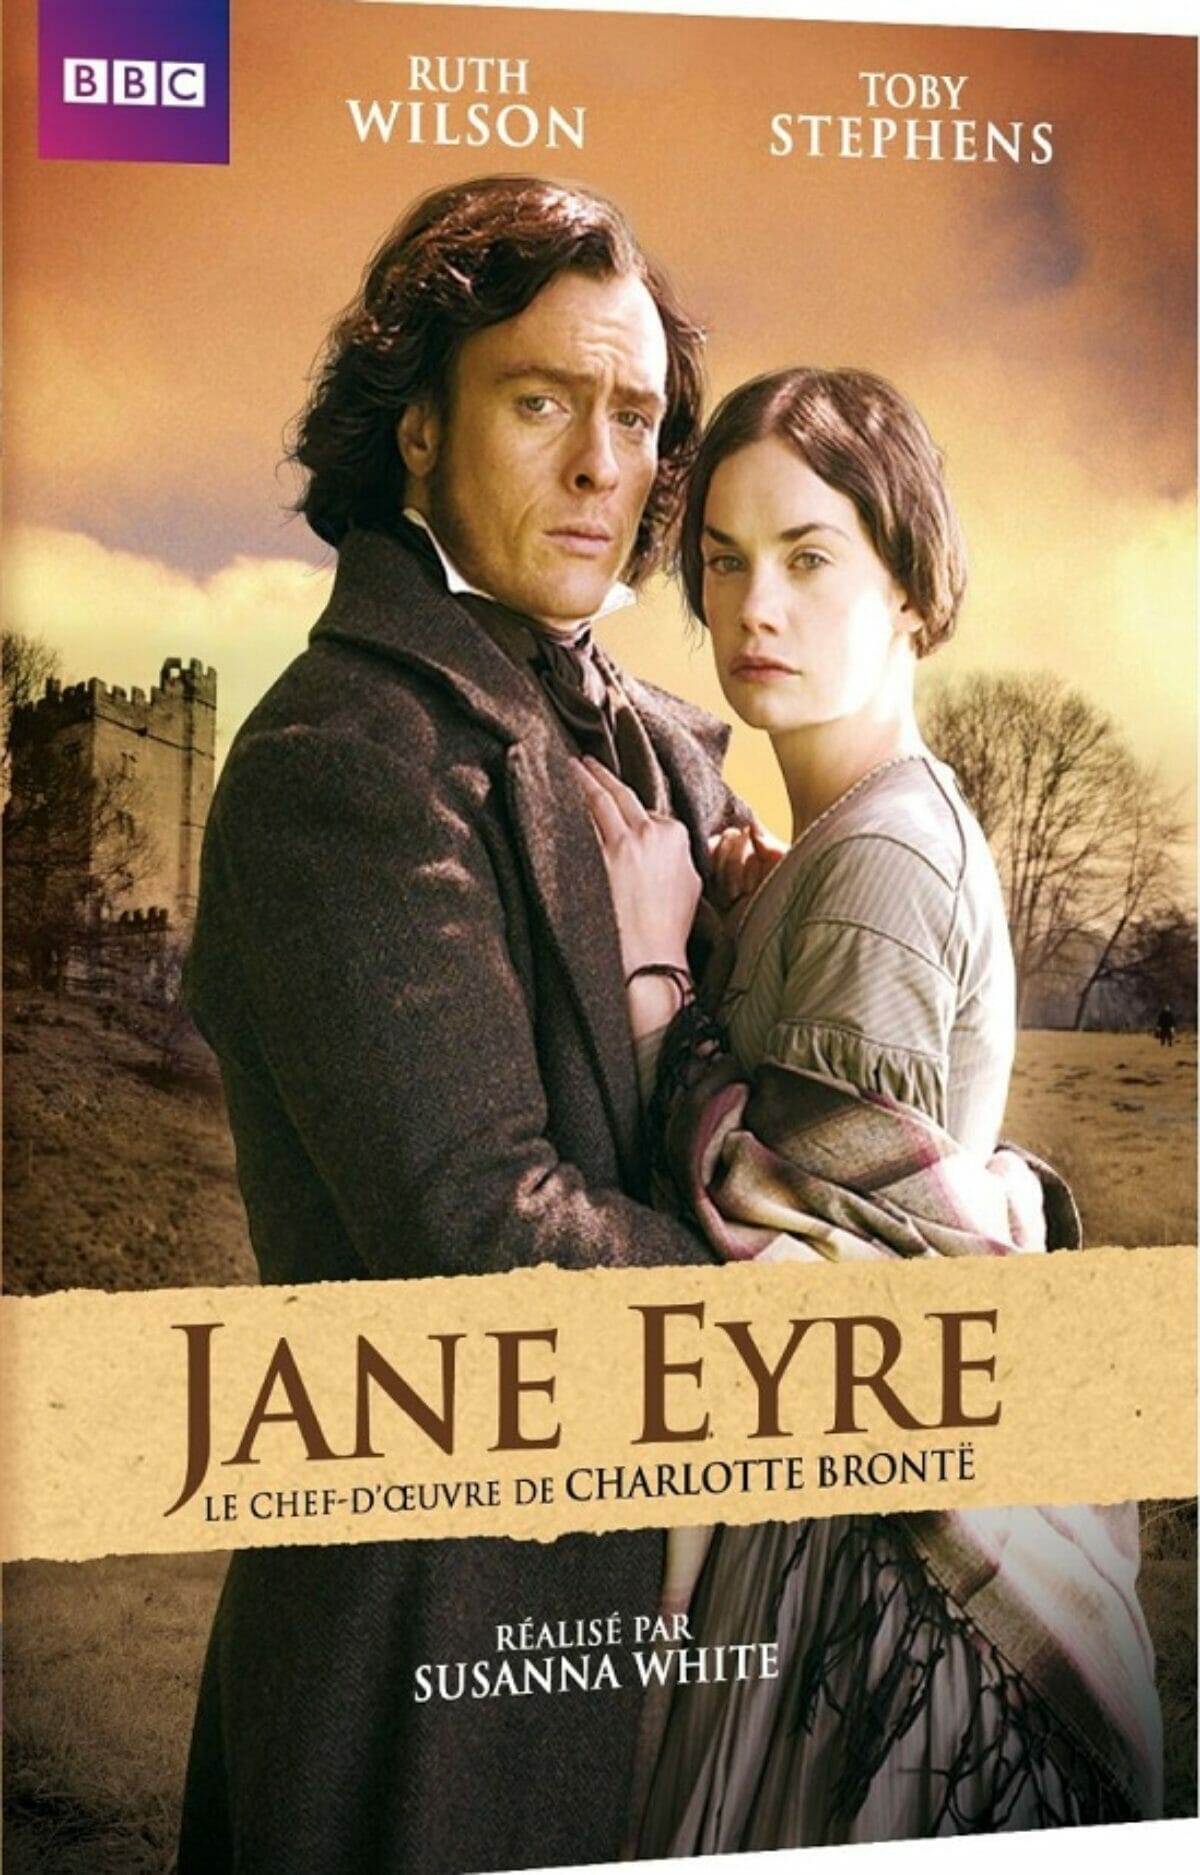 Jane-eyre-affiche-BBC